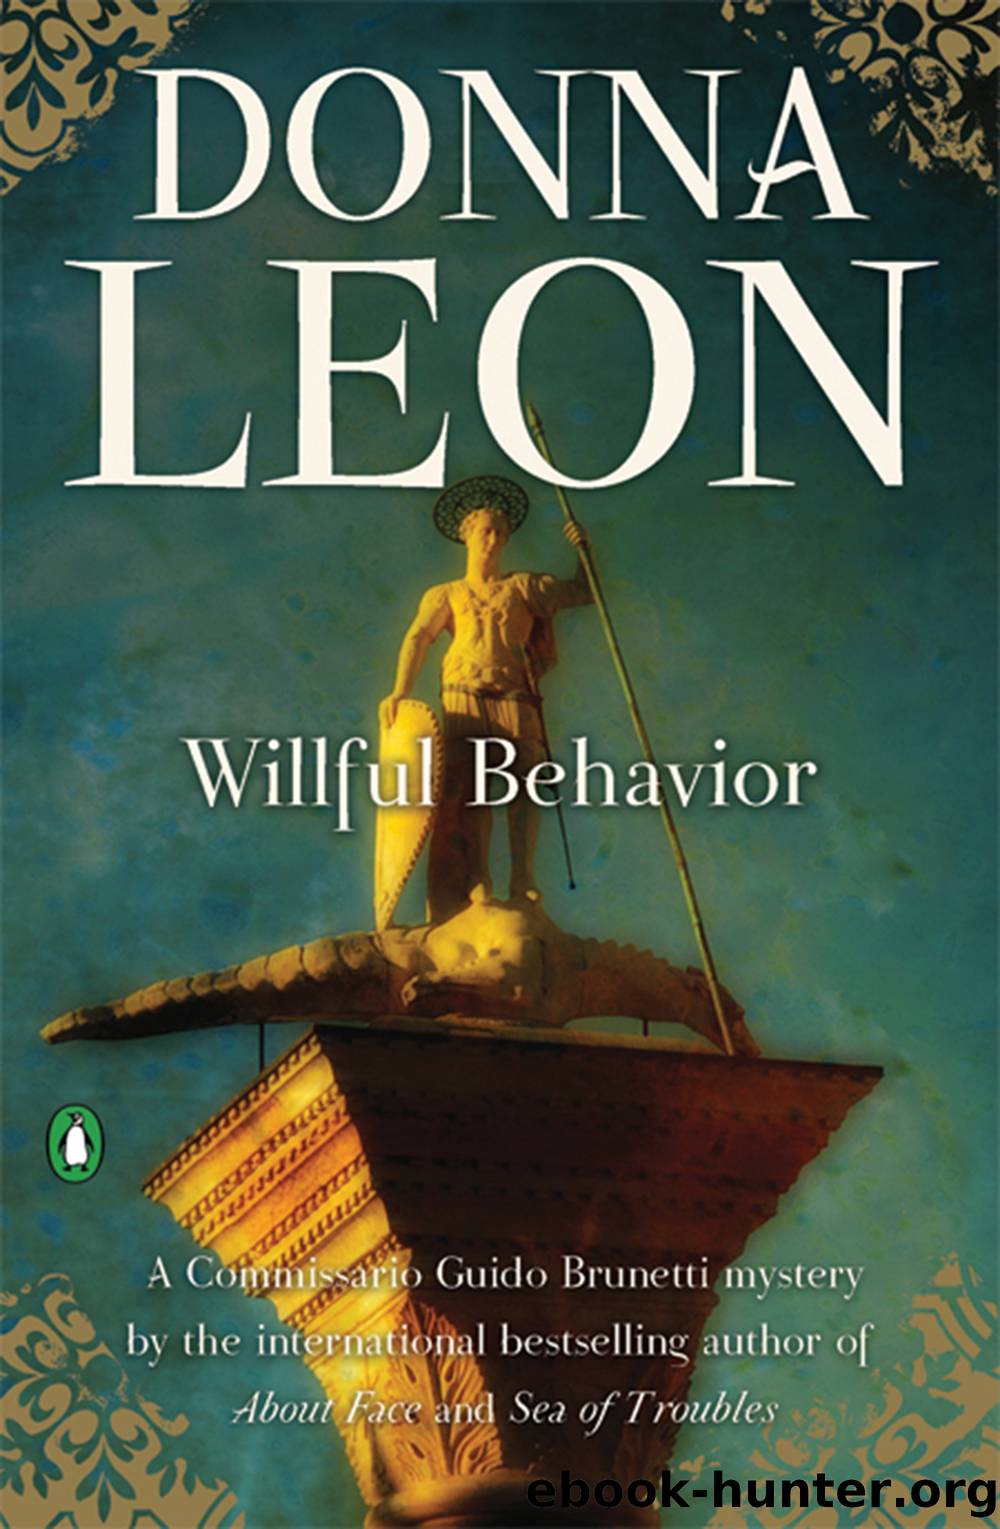 Willful Behavior by Donna Leon